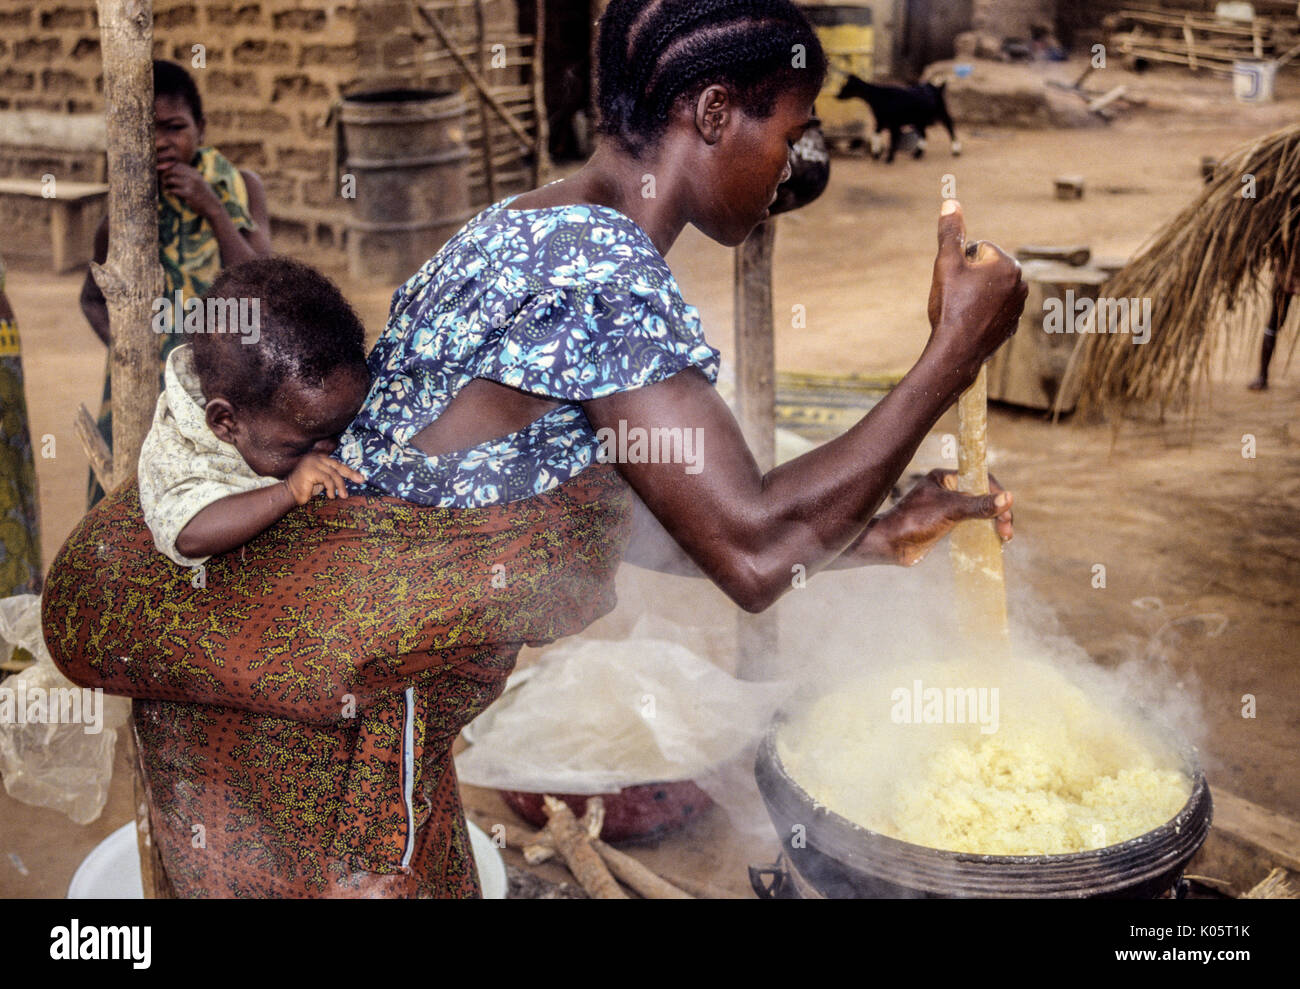 Bamoro, Côte d'Ivoire (Ivory Coast). Femme Atieke Village, une base de féculents à base de manioc. Banque D'Images